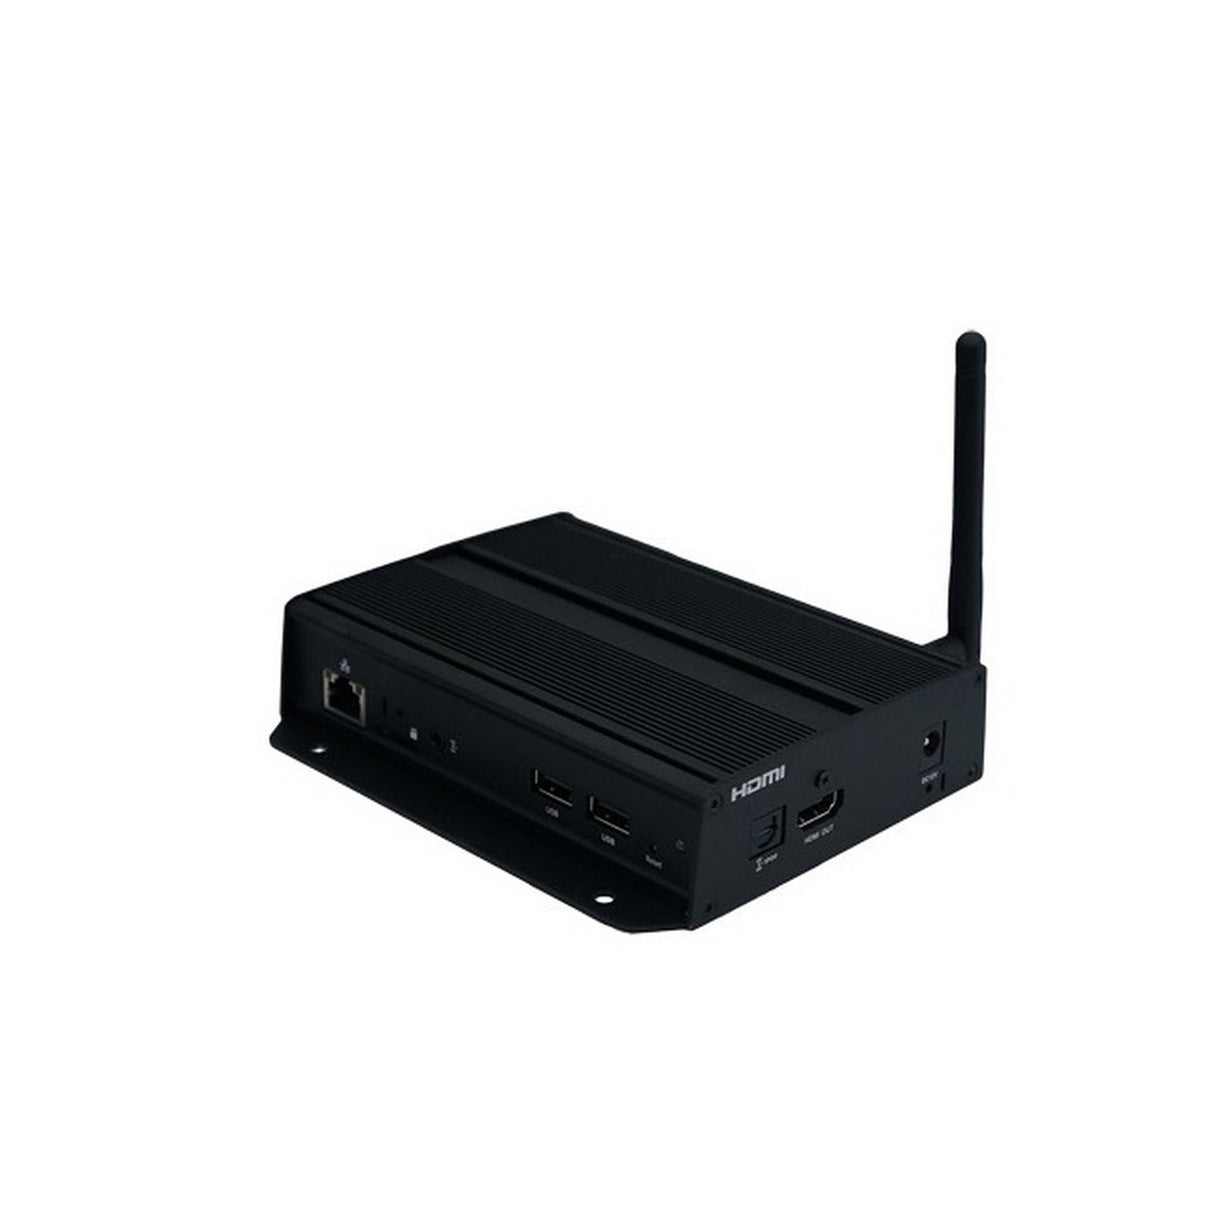 IAdea XMP-7300 | HTML5 8GB HDMI Wireless 4K Ultra HD Network Media Player